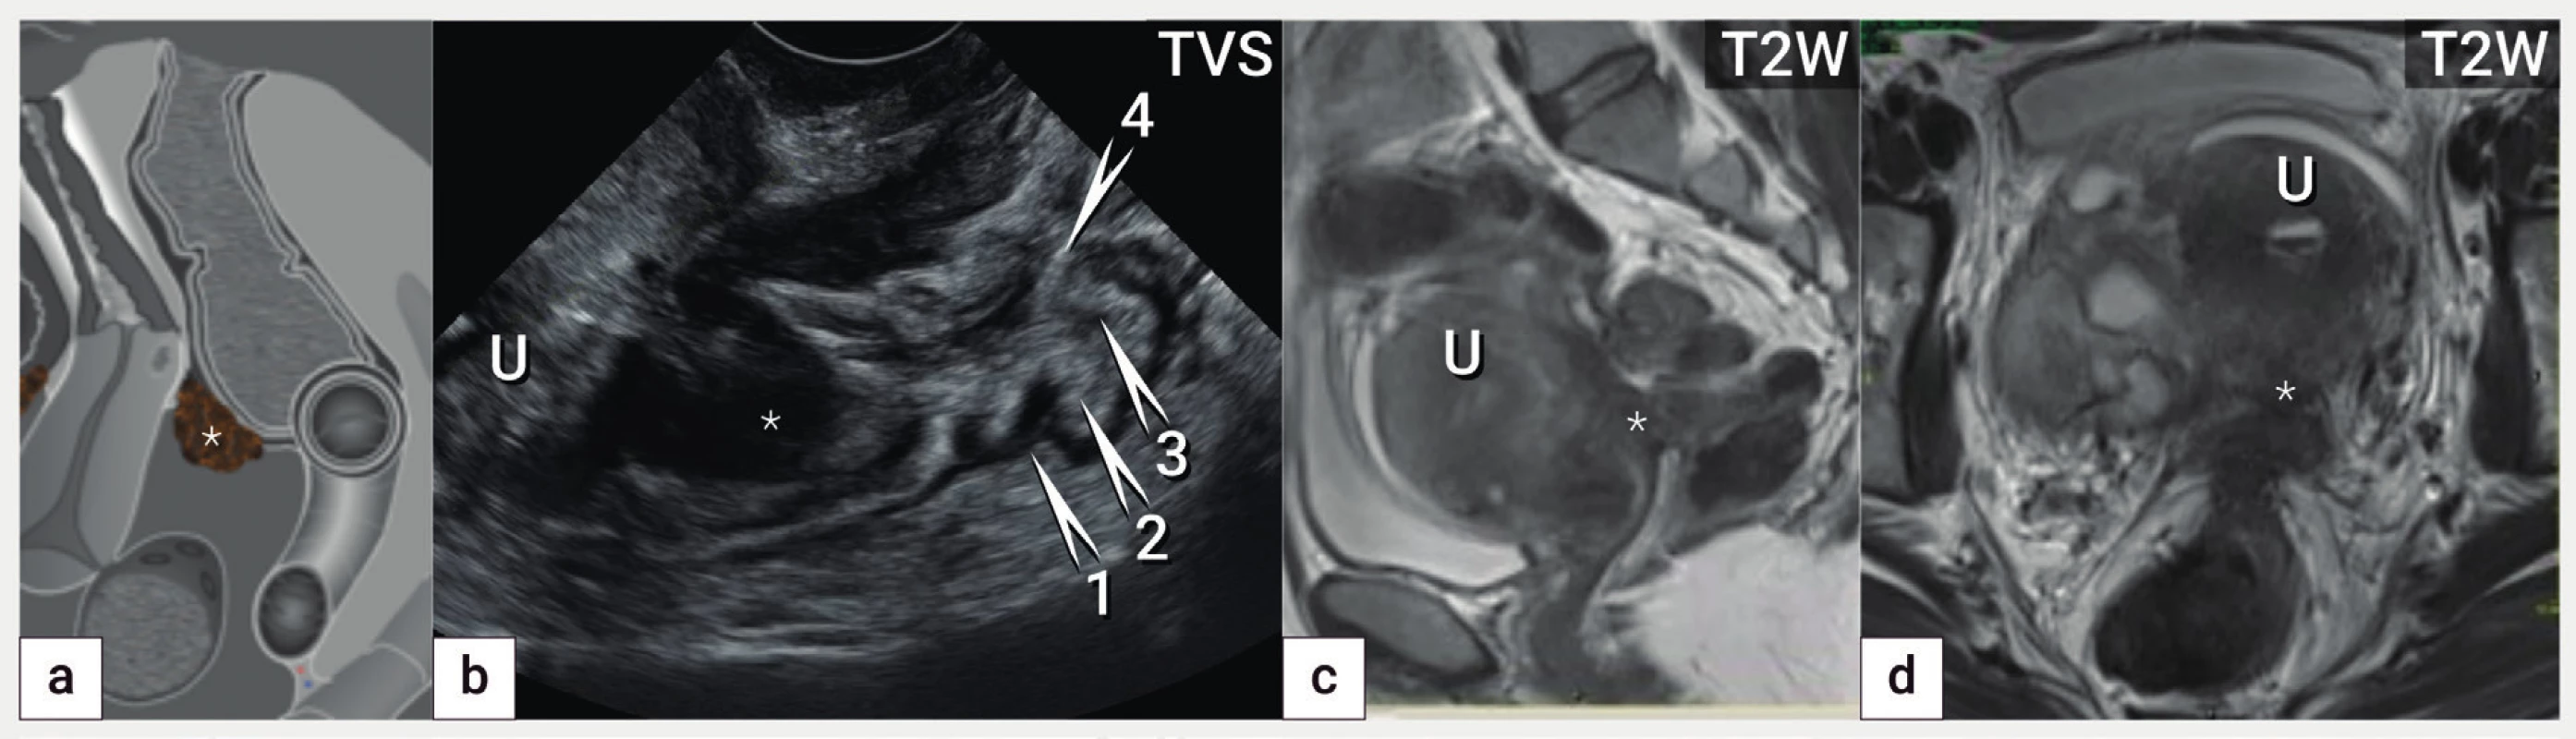 Anatomie rekta a rektosigmoidea: hluboká endometrióza horního rekta<br>
Schéma hluboké endometriózy horního rekta (označena hvězdičkou) (a), ultrazvukový nález hluboké endometriózy přední stěny horního rekta
s hypoechogenní infiltrací svalové vrstvy (muscularis propria) a submukózy (hvězdička) (b), magnetická rezonance v T2 váženém obrazu
v sagitálním (c) a transverzálním řezu (d) s nálezem identické léze DE (hvězdička). Označení vrstev zadní stěny rekta od serózy k mukóze
(1 – muscularis propria, 2 – submukóza, 3 – muscularis mucosae, 4 – mukóza). U – uterus. TVS – transvaginální sonografie, T2W – T2 vážené
obrazy v magnetické rezonanci.